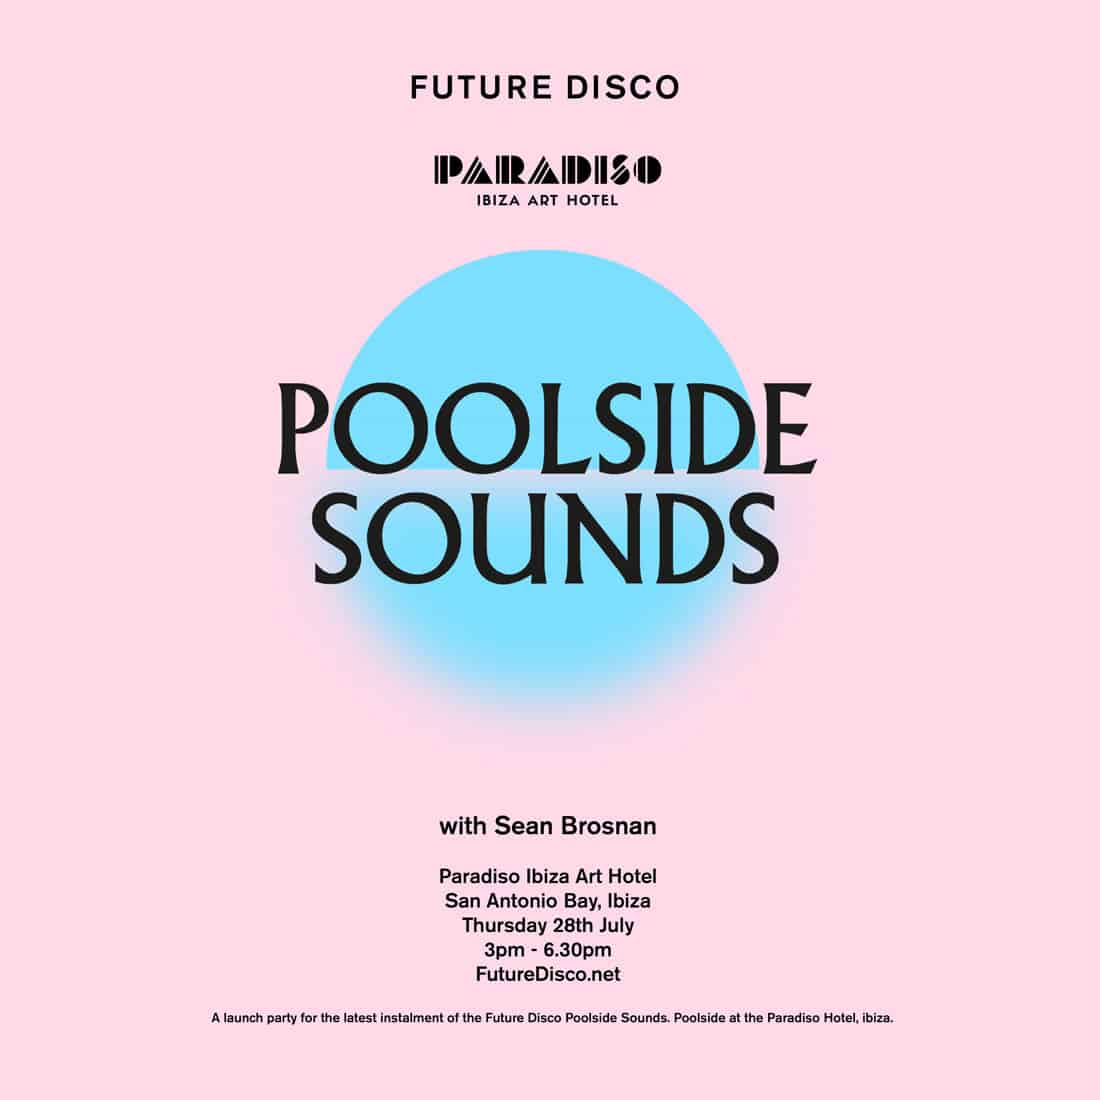 futura-discoteca-a-bordo-piscina-sounds-paradiso-ibiza-2022-welcometoibiza